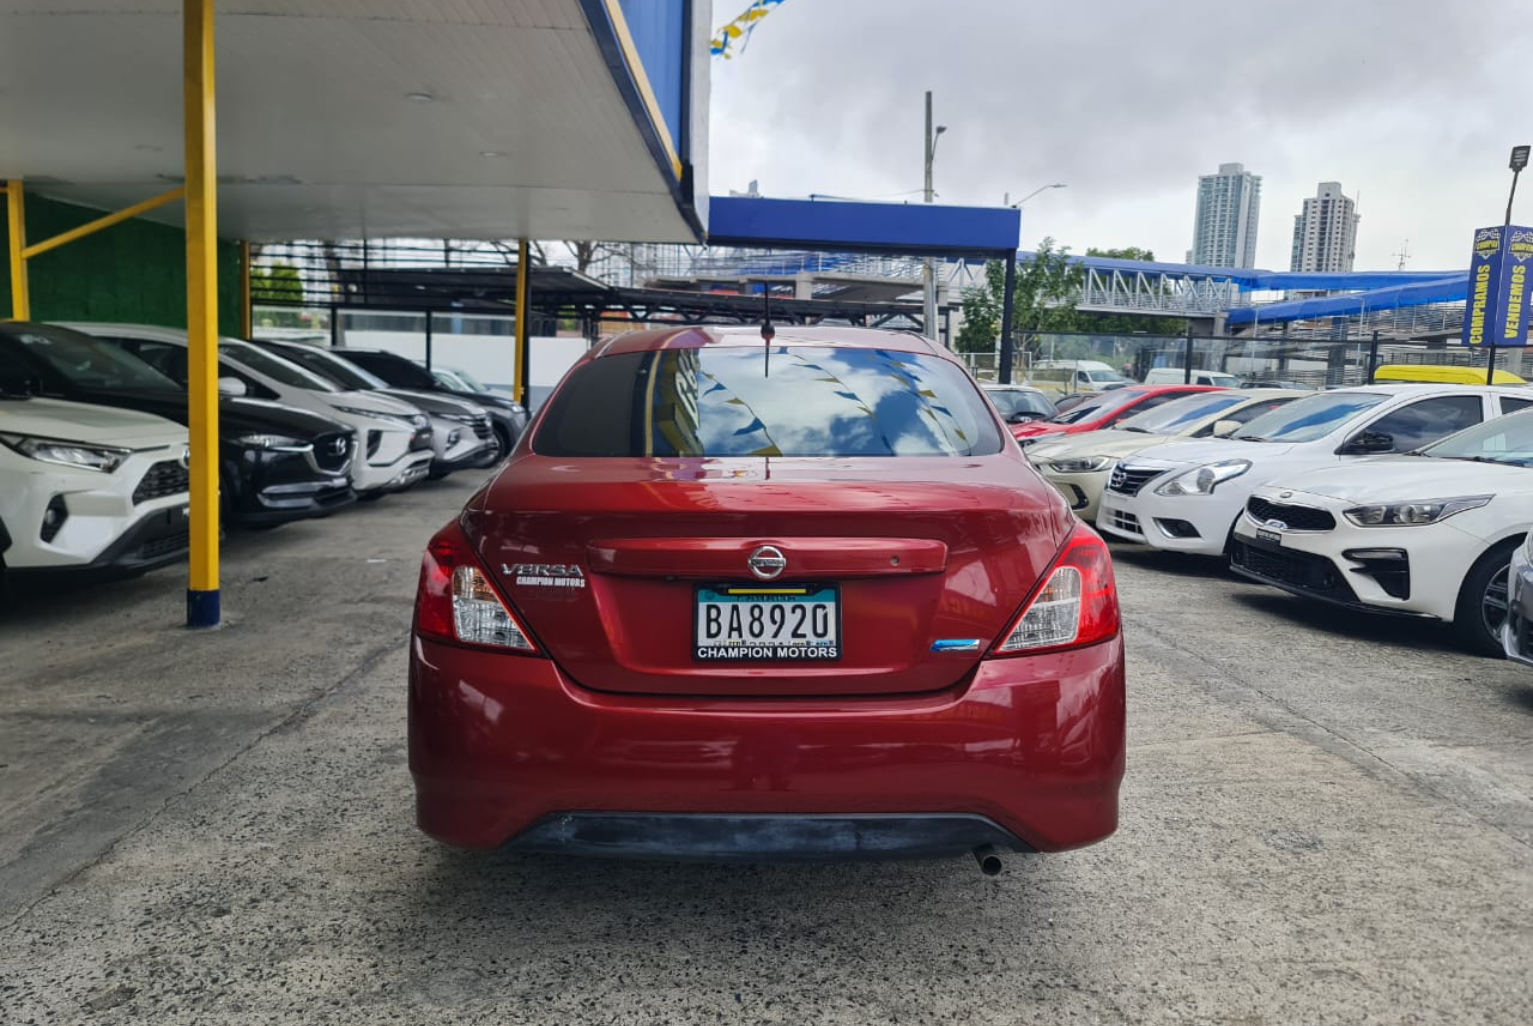 Nissan Versa 2017 Automático color Rojo, Imagen #5